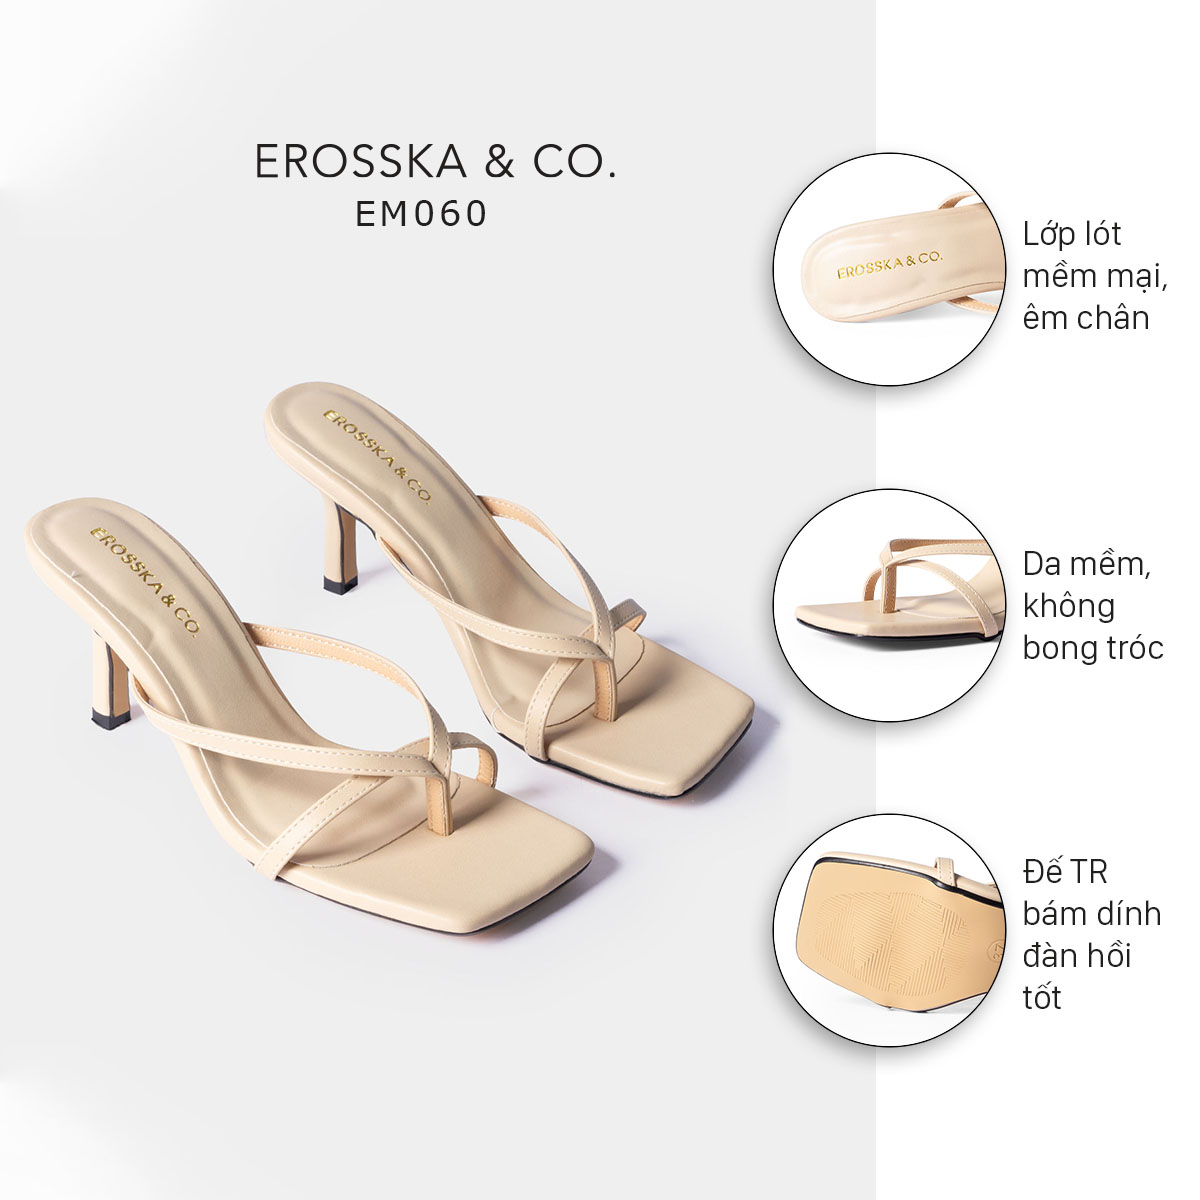 Dép cao gót thời trang Erosska mũi vuông kiểu dáng xỏ ngón phối dây quai mảnh gót nhọn cao 7cm màu nude - EM060